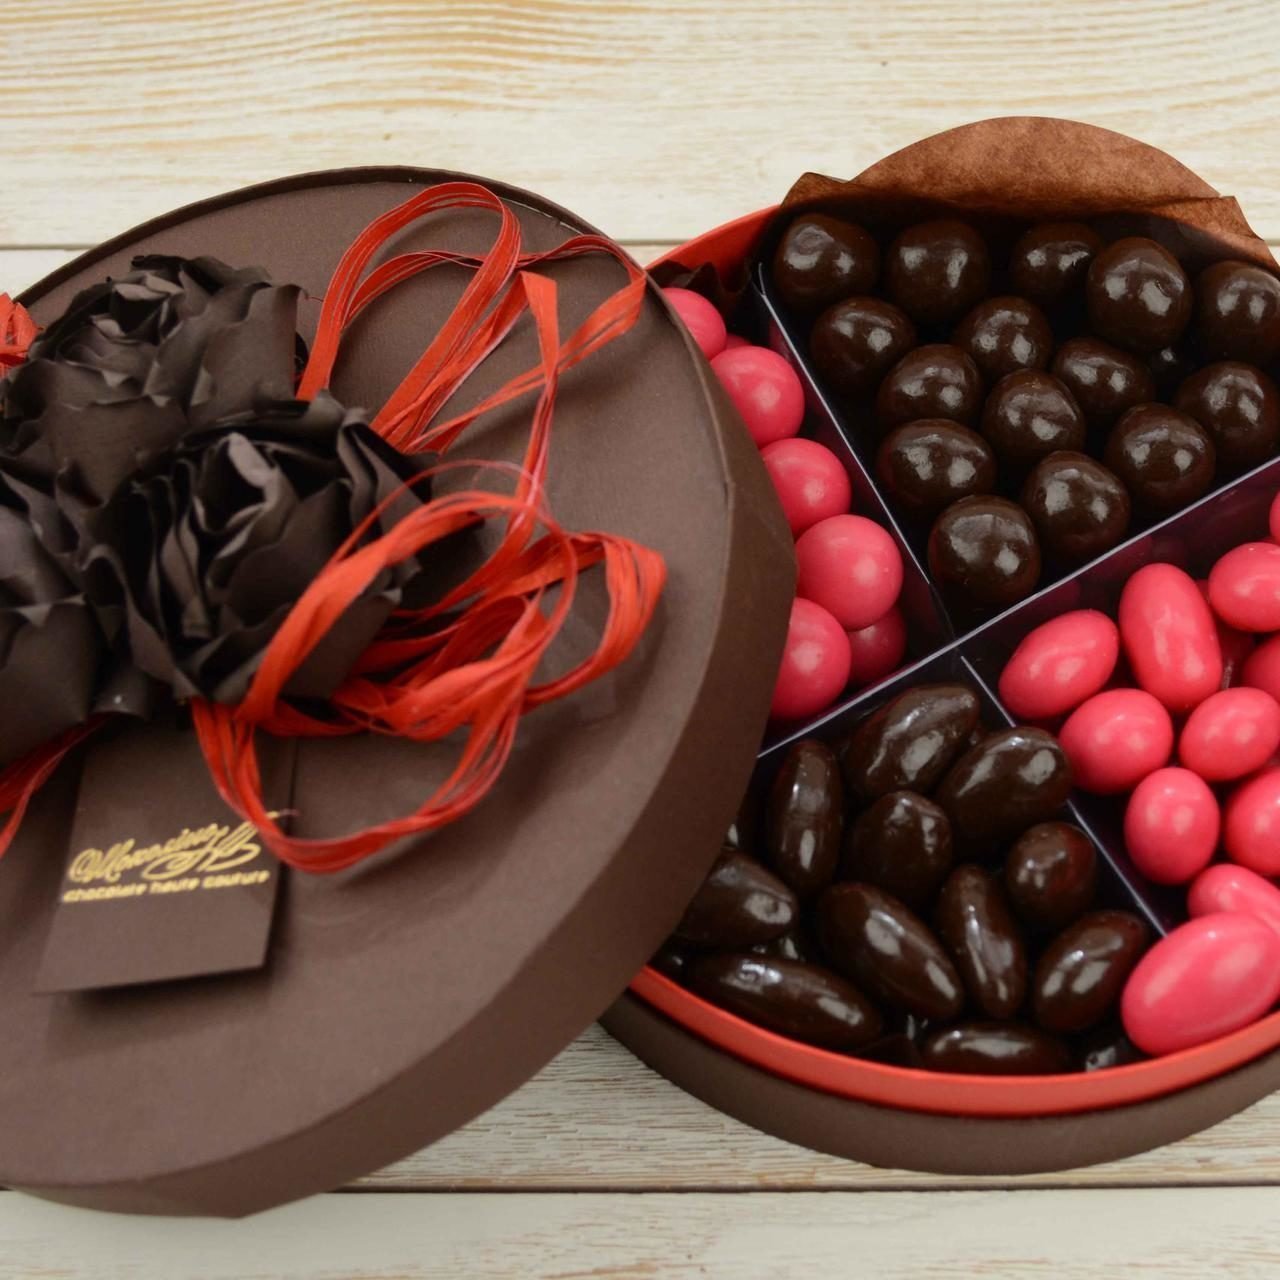 Купить шоколад в новосибирске. Пралине (бельгийский шоколад). Красивые шоколадные конфеты. Бельгийский шоколад подарочный. Конфеты шоколадные в коробке.